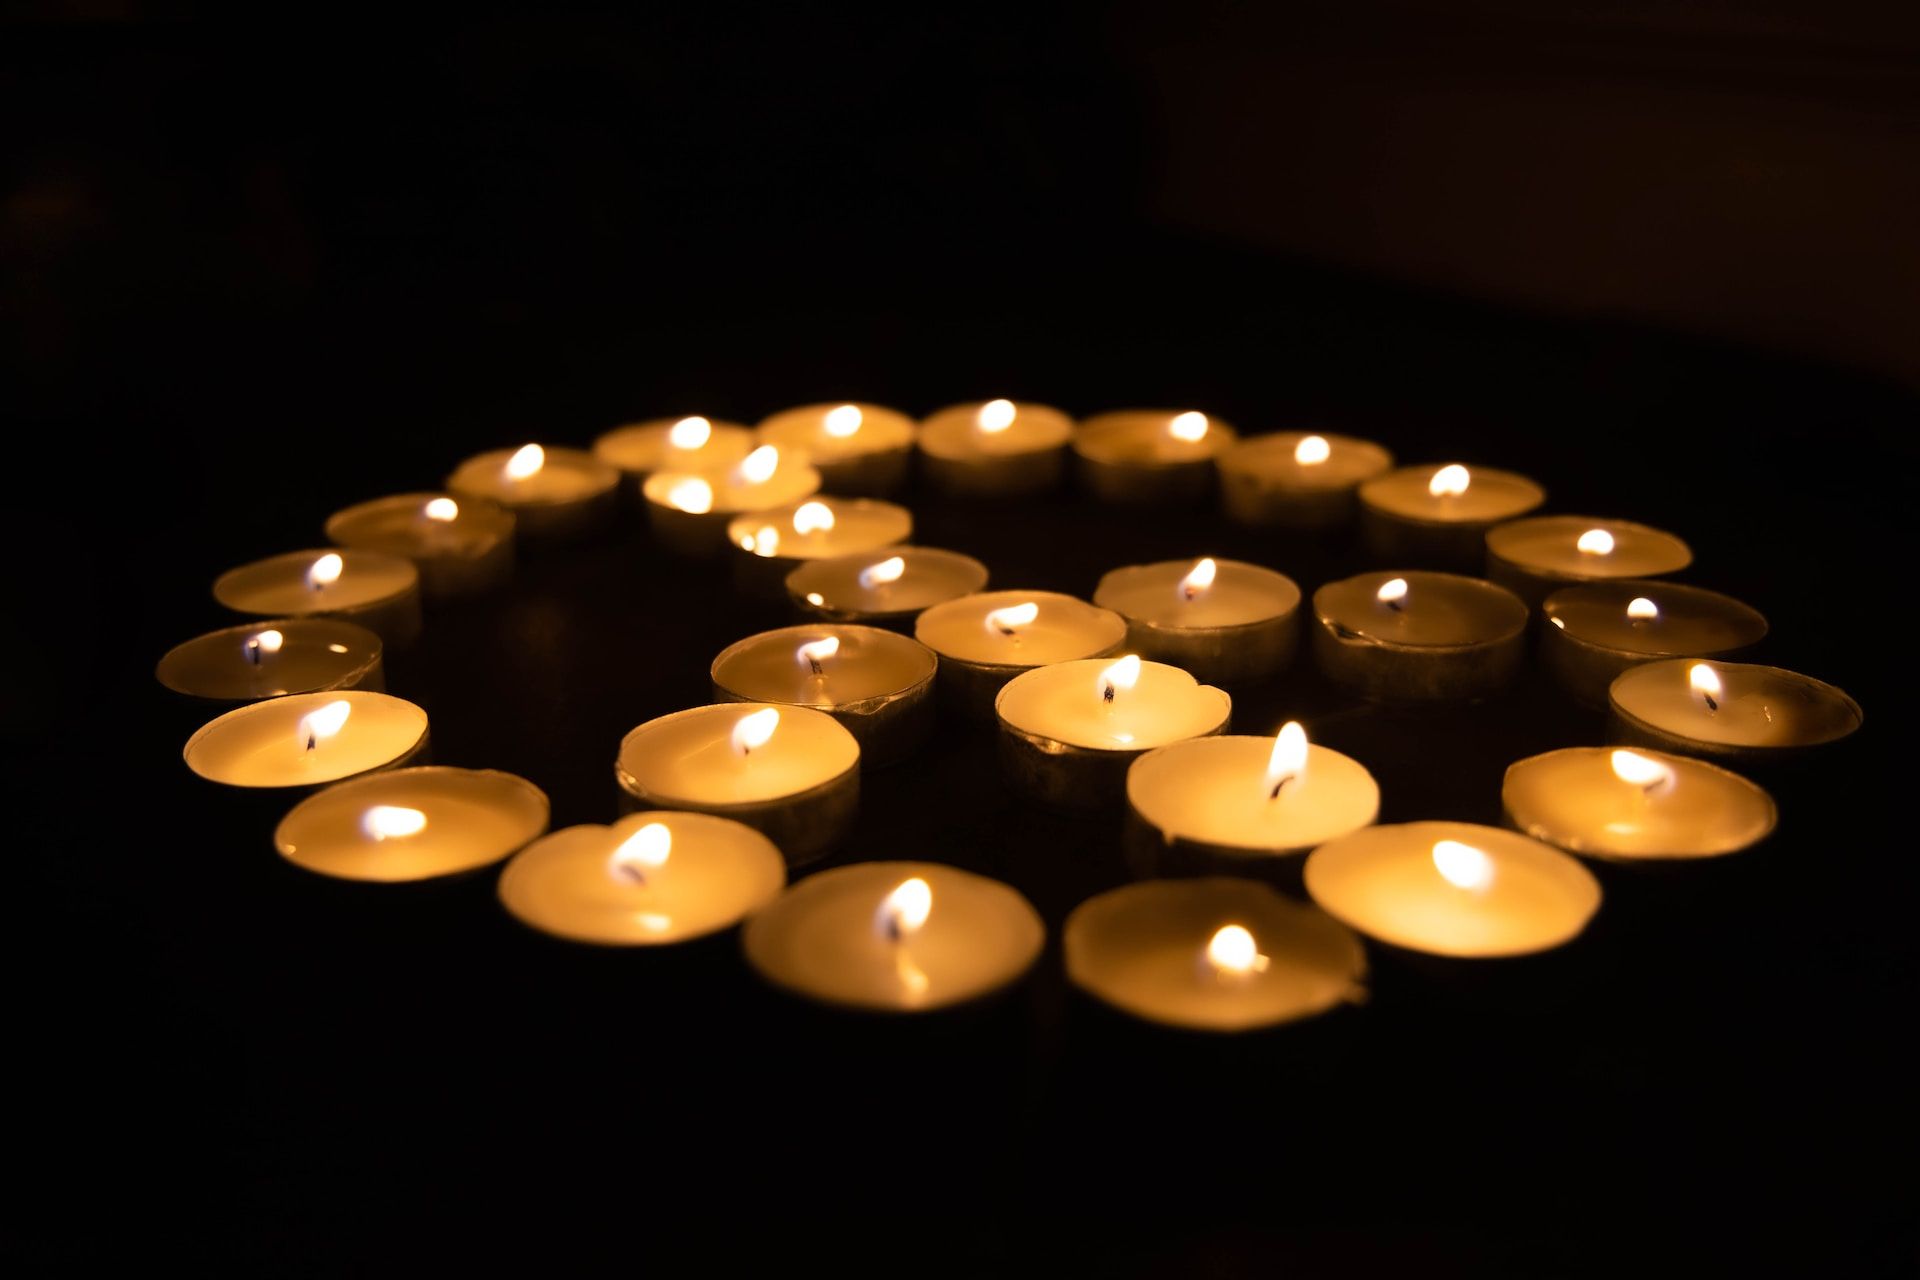 Un signe de paix dessiné avec des petites bougies allumées dan sle noir - Photo de Joshua Sukoff sur https://unsplash.com/fr/photos/SsphTEregQ8